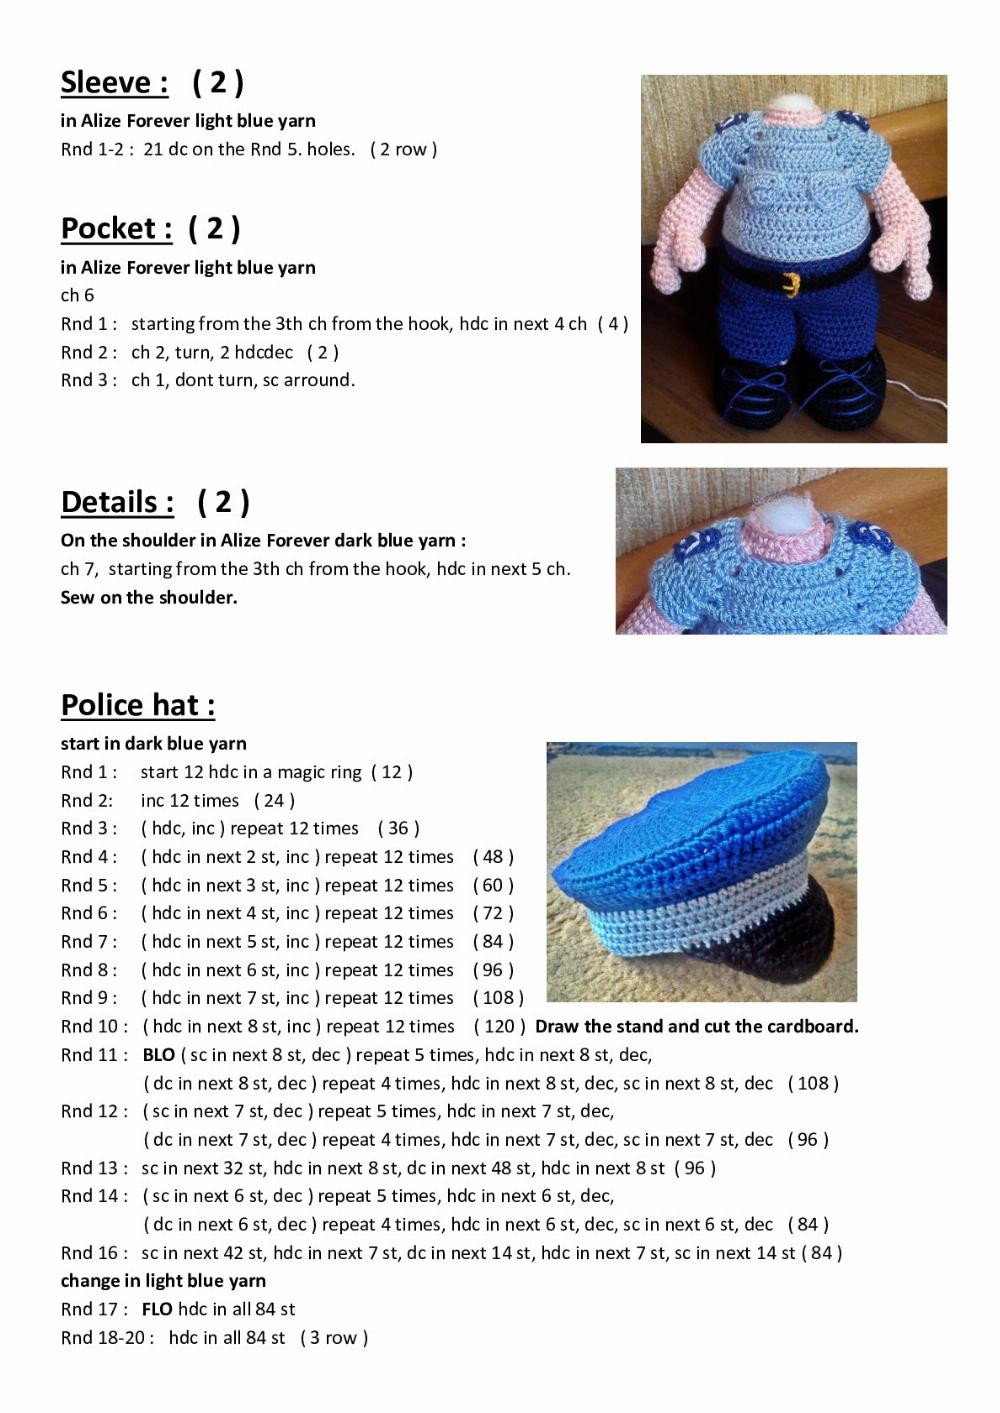 Police Elf Boy crochet pattern